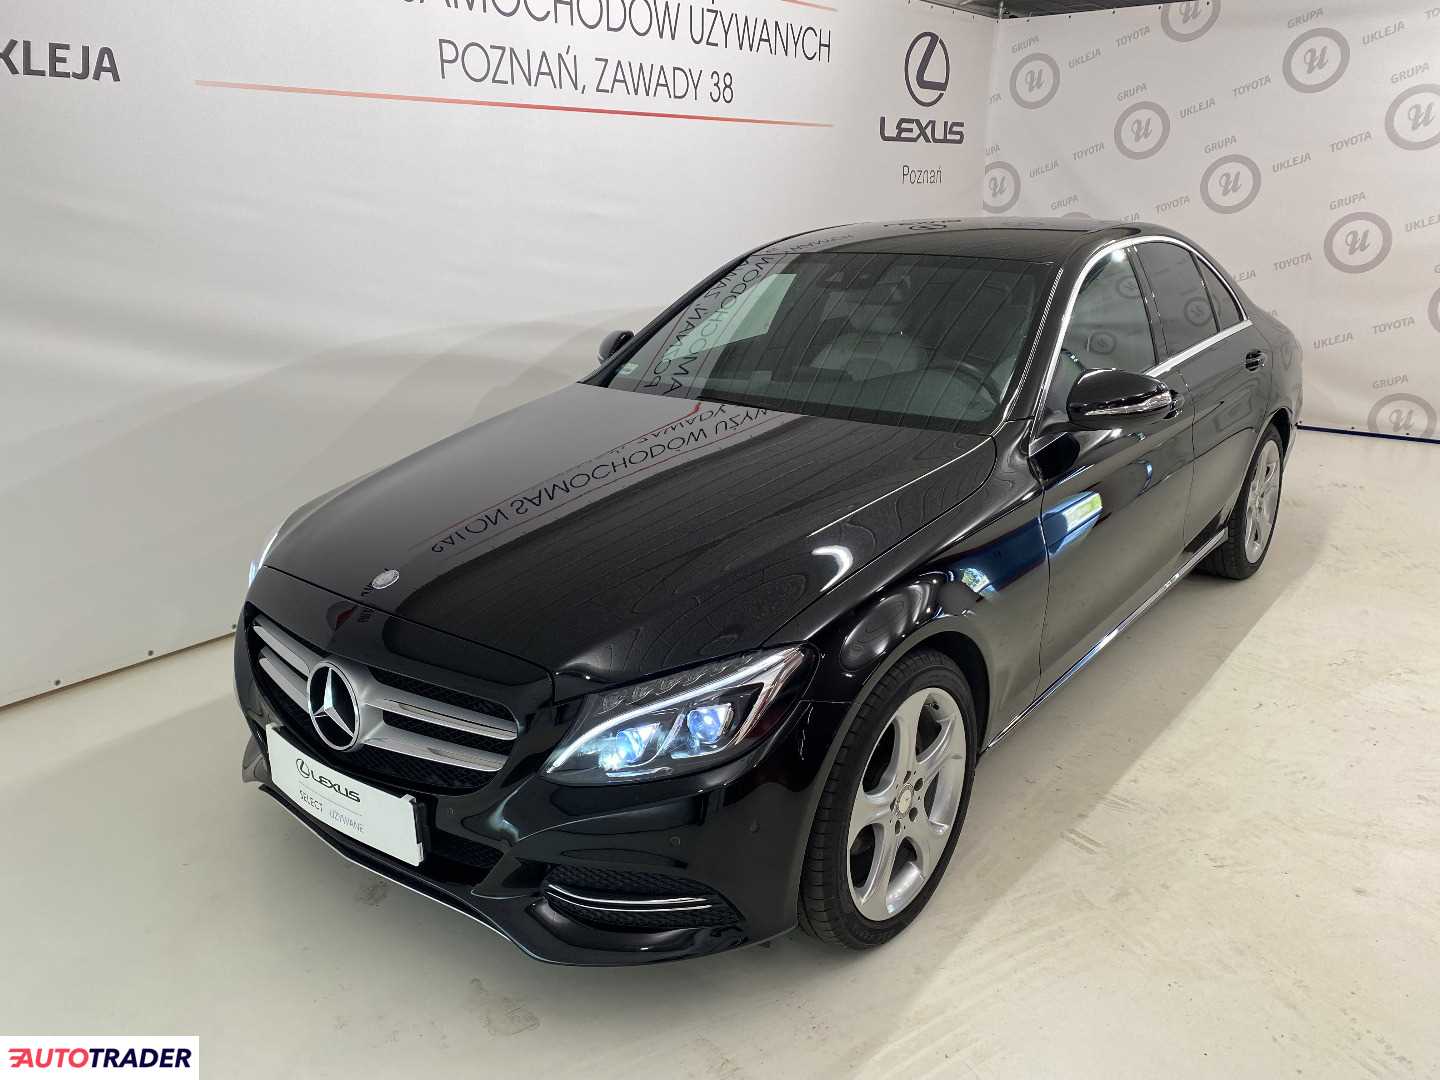 Mercedes CE 2015 1.6 136 KM